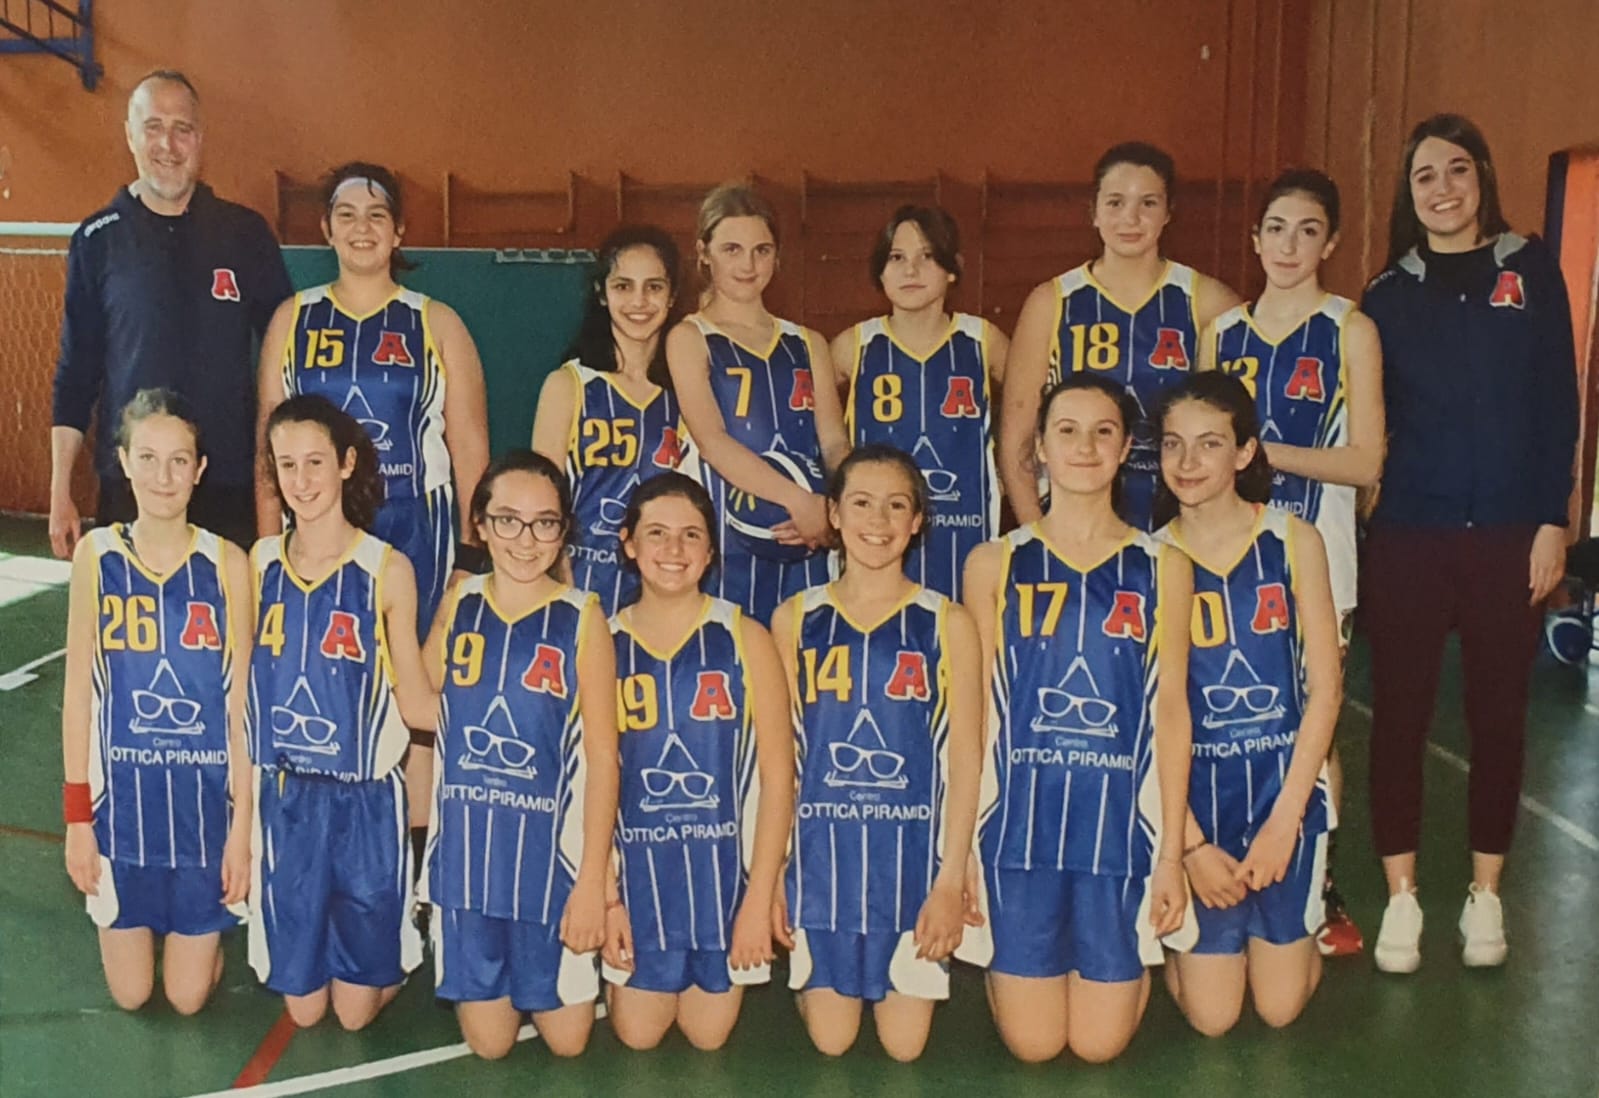 Torneo di Pesaro Femminile: Under 13 AP2020, superiori alle aspettative nel carattere e nell’esperienza di Pesaro…Brave!!